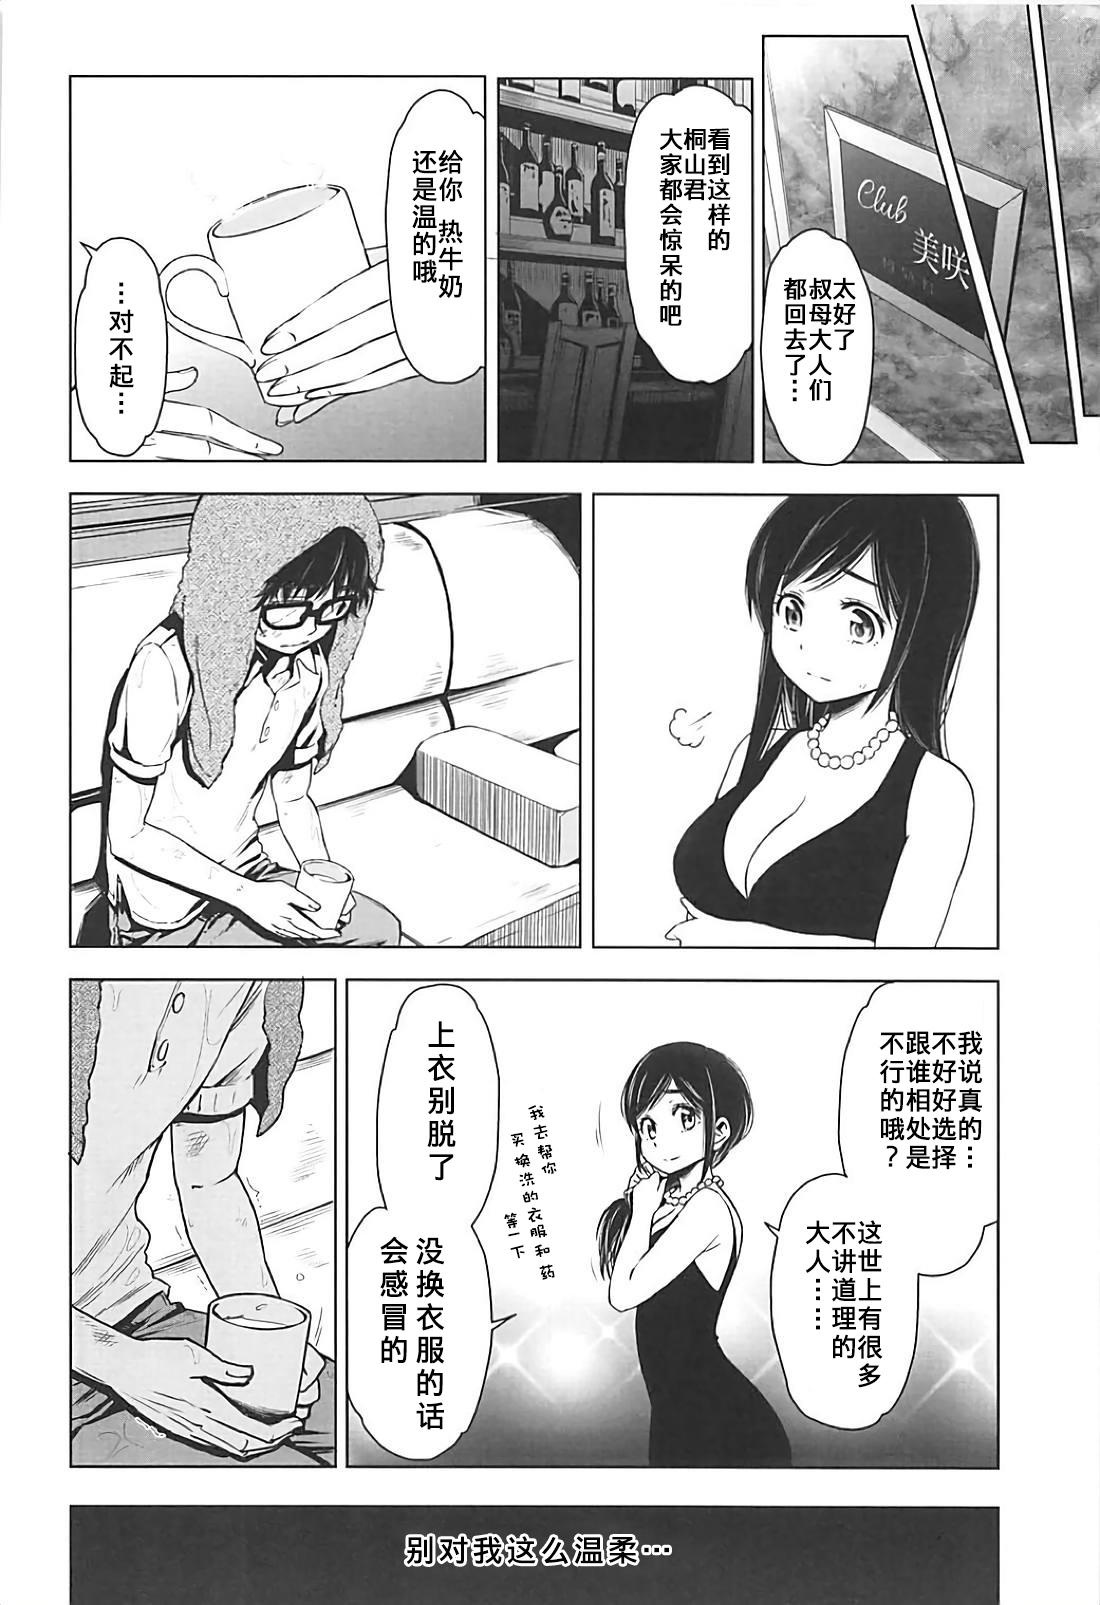 Threesome Rakugetsu no Lion - 3 gatsu no lion Blackwoman - Page 6